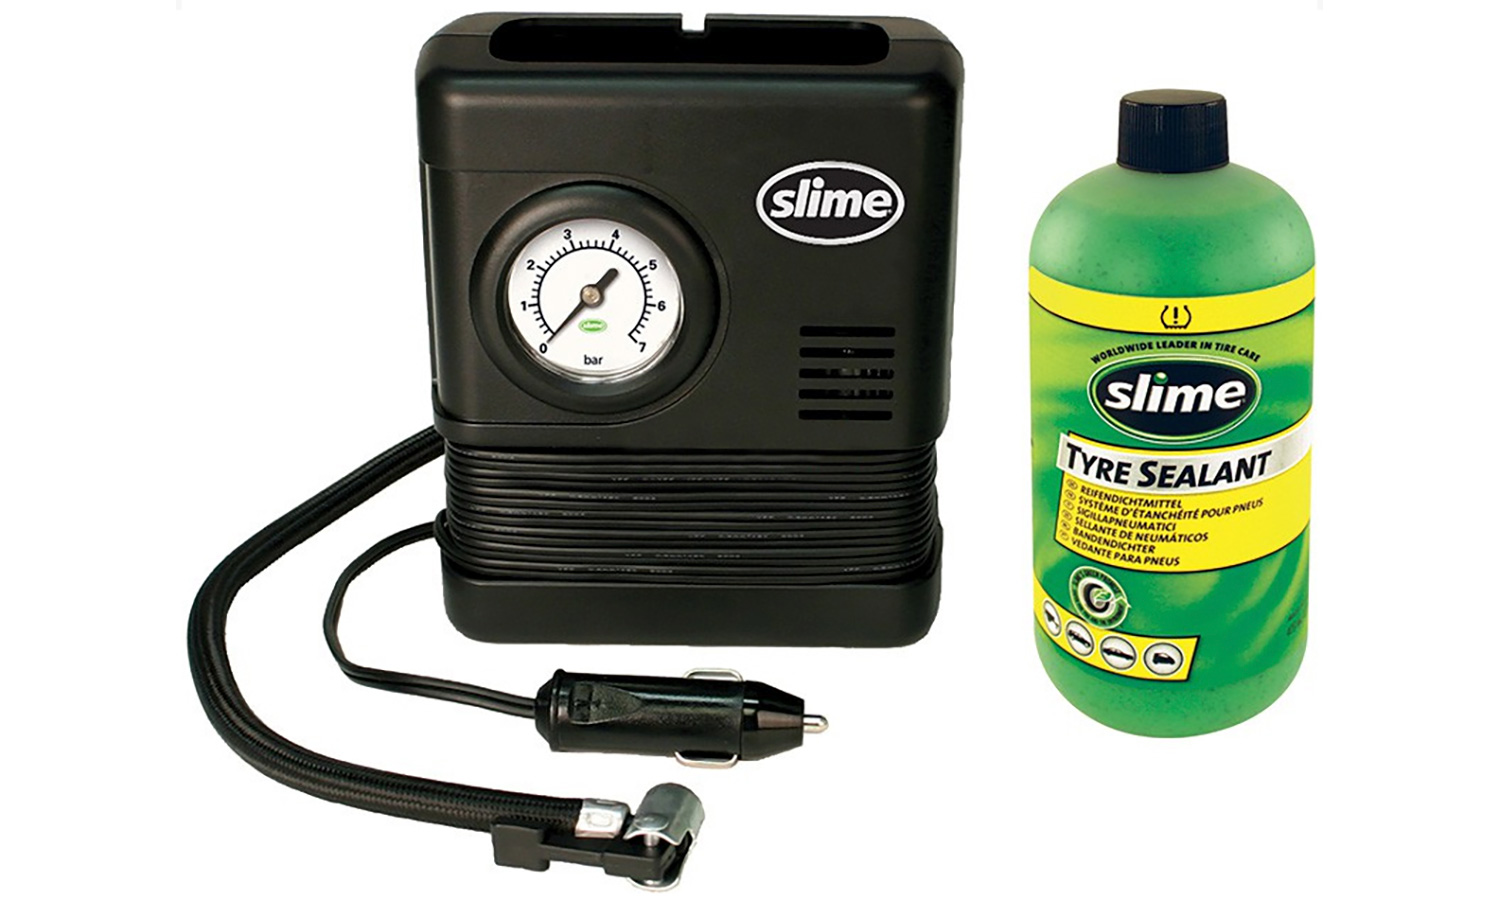 Фотография Ремкомплект для автопокрышек Smart Spair (герметик + воздушный компрессор), Slime